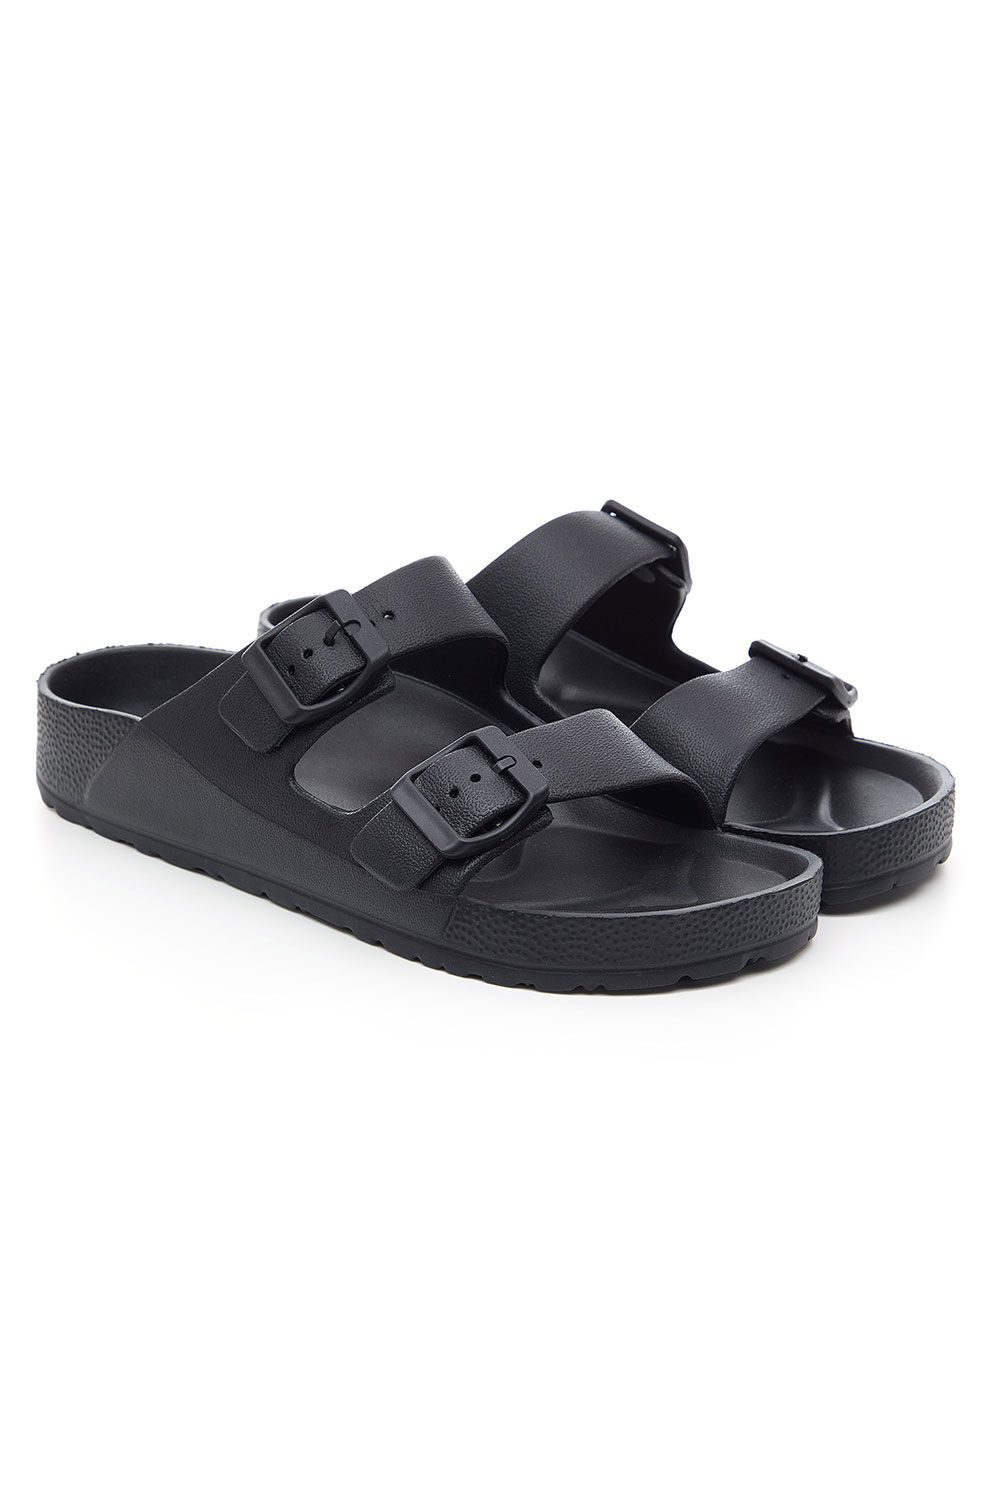 Bonmarche Black Double Buckle Sandals, Size: 7